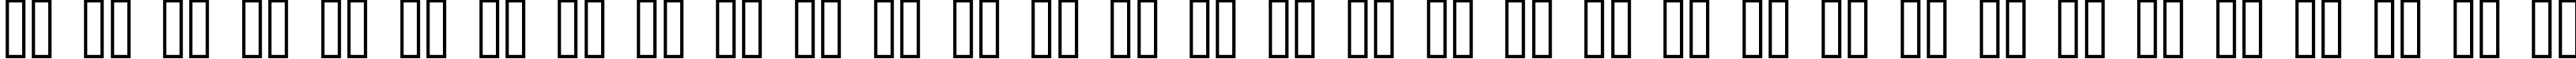 Пример написания русского алфавита шрифтом ceriph 07_56